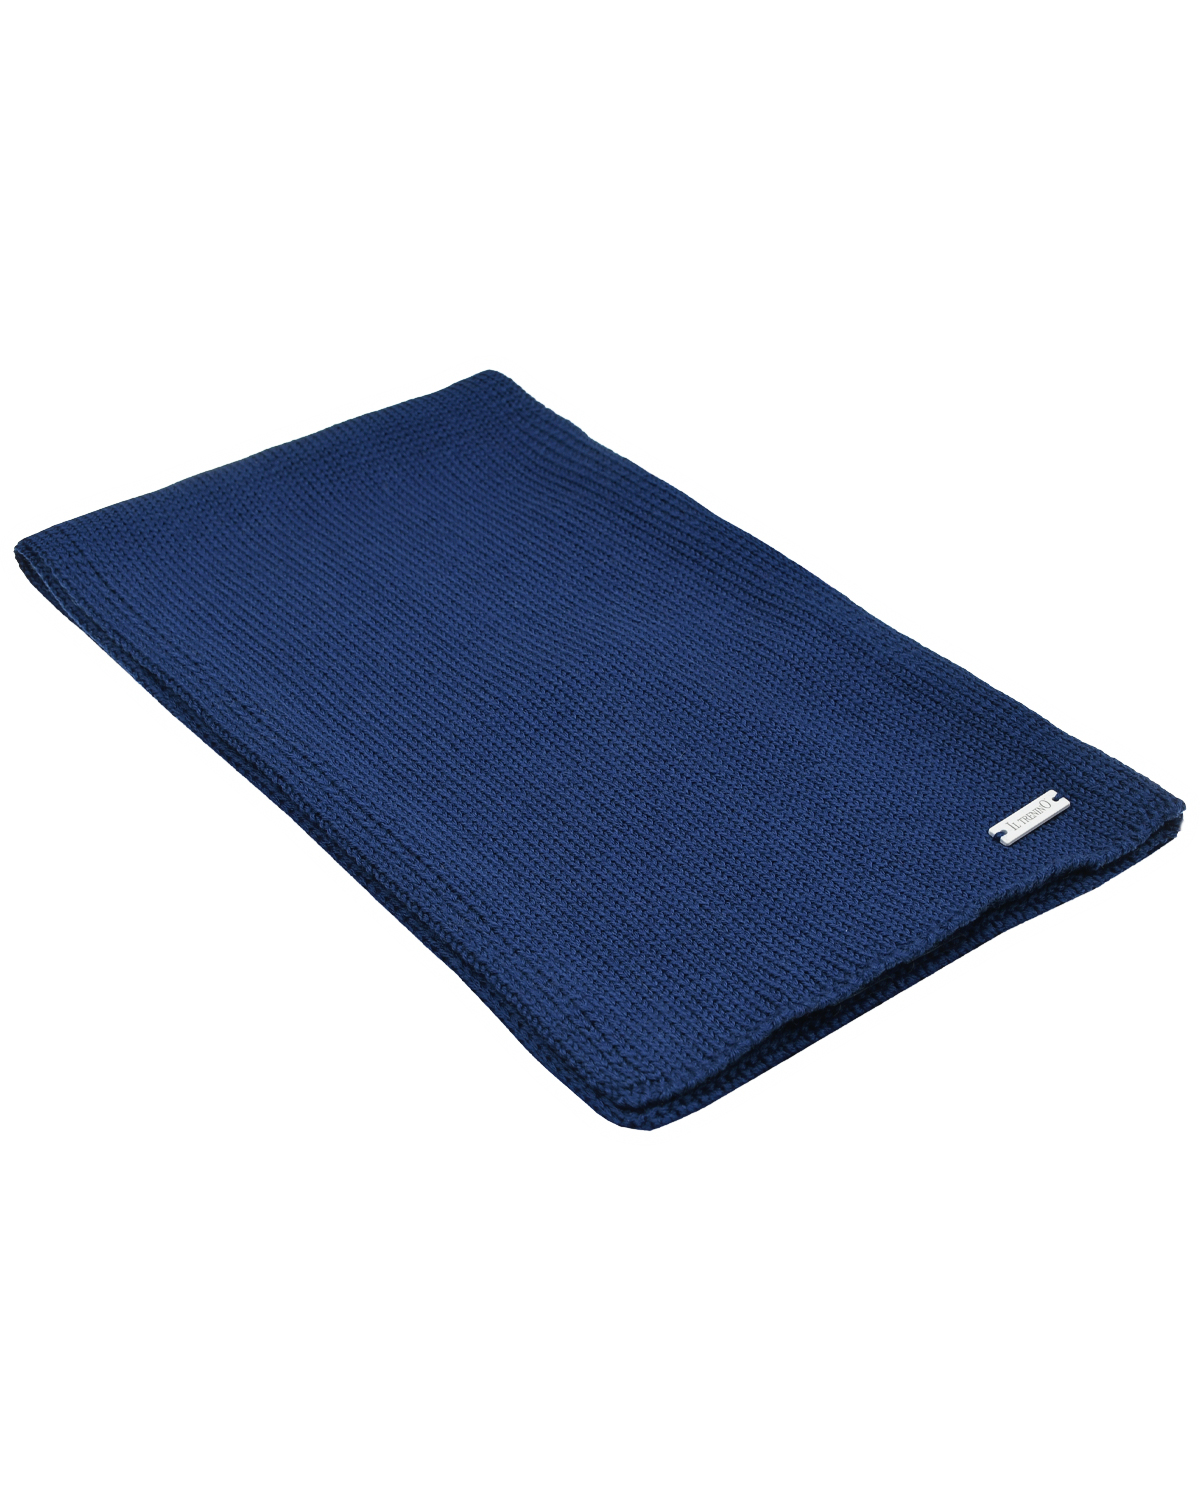 Синий шарф, 140x19 см Il Trenino детский, размер unica